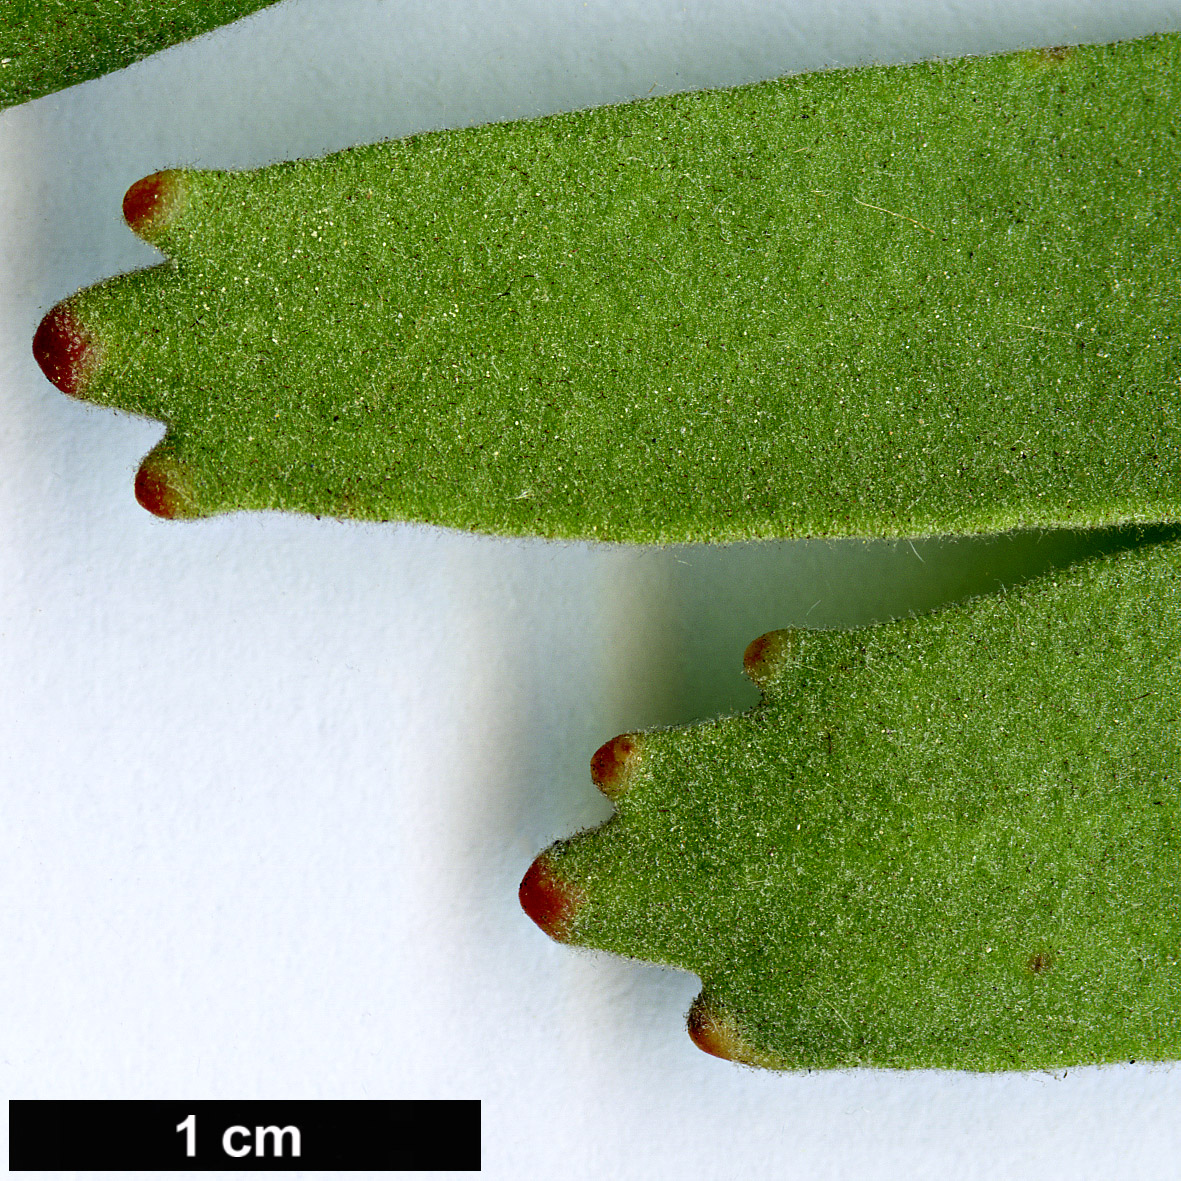 High resolution image: Family: Proteaceae - Genus: Leucospermum - Taxon: erubescens